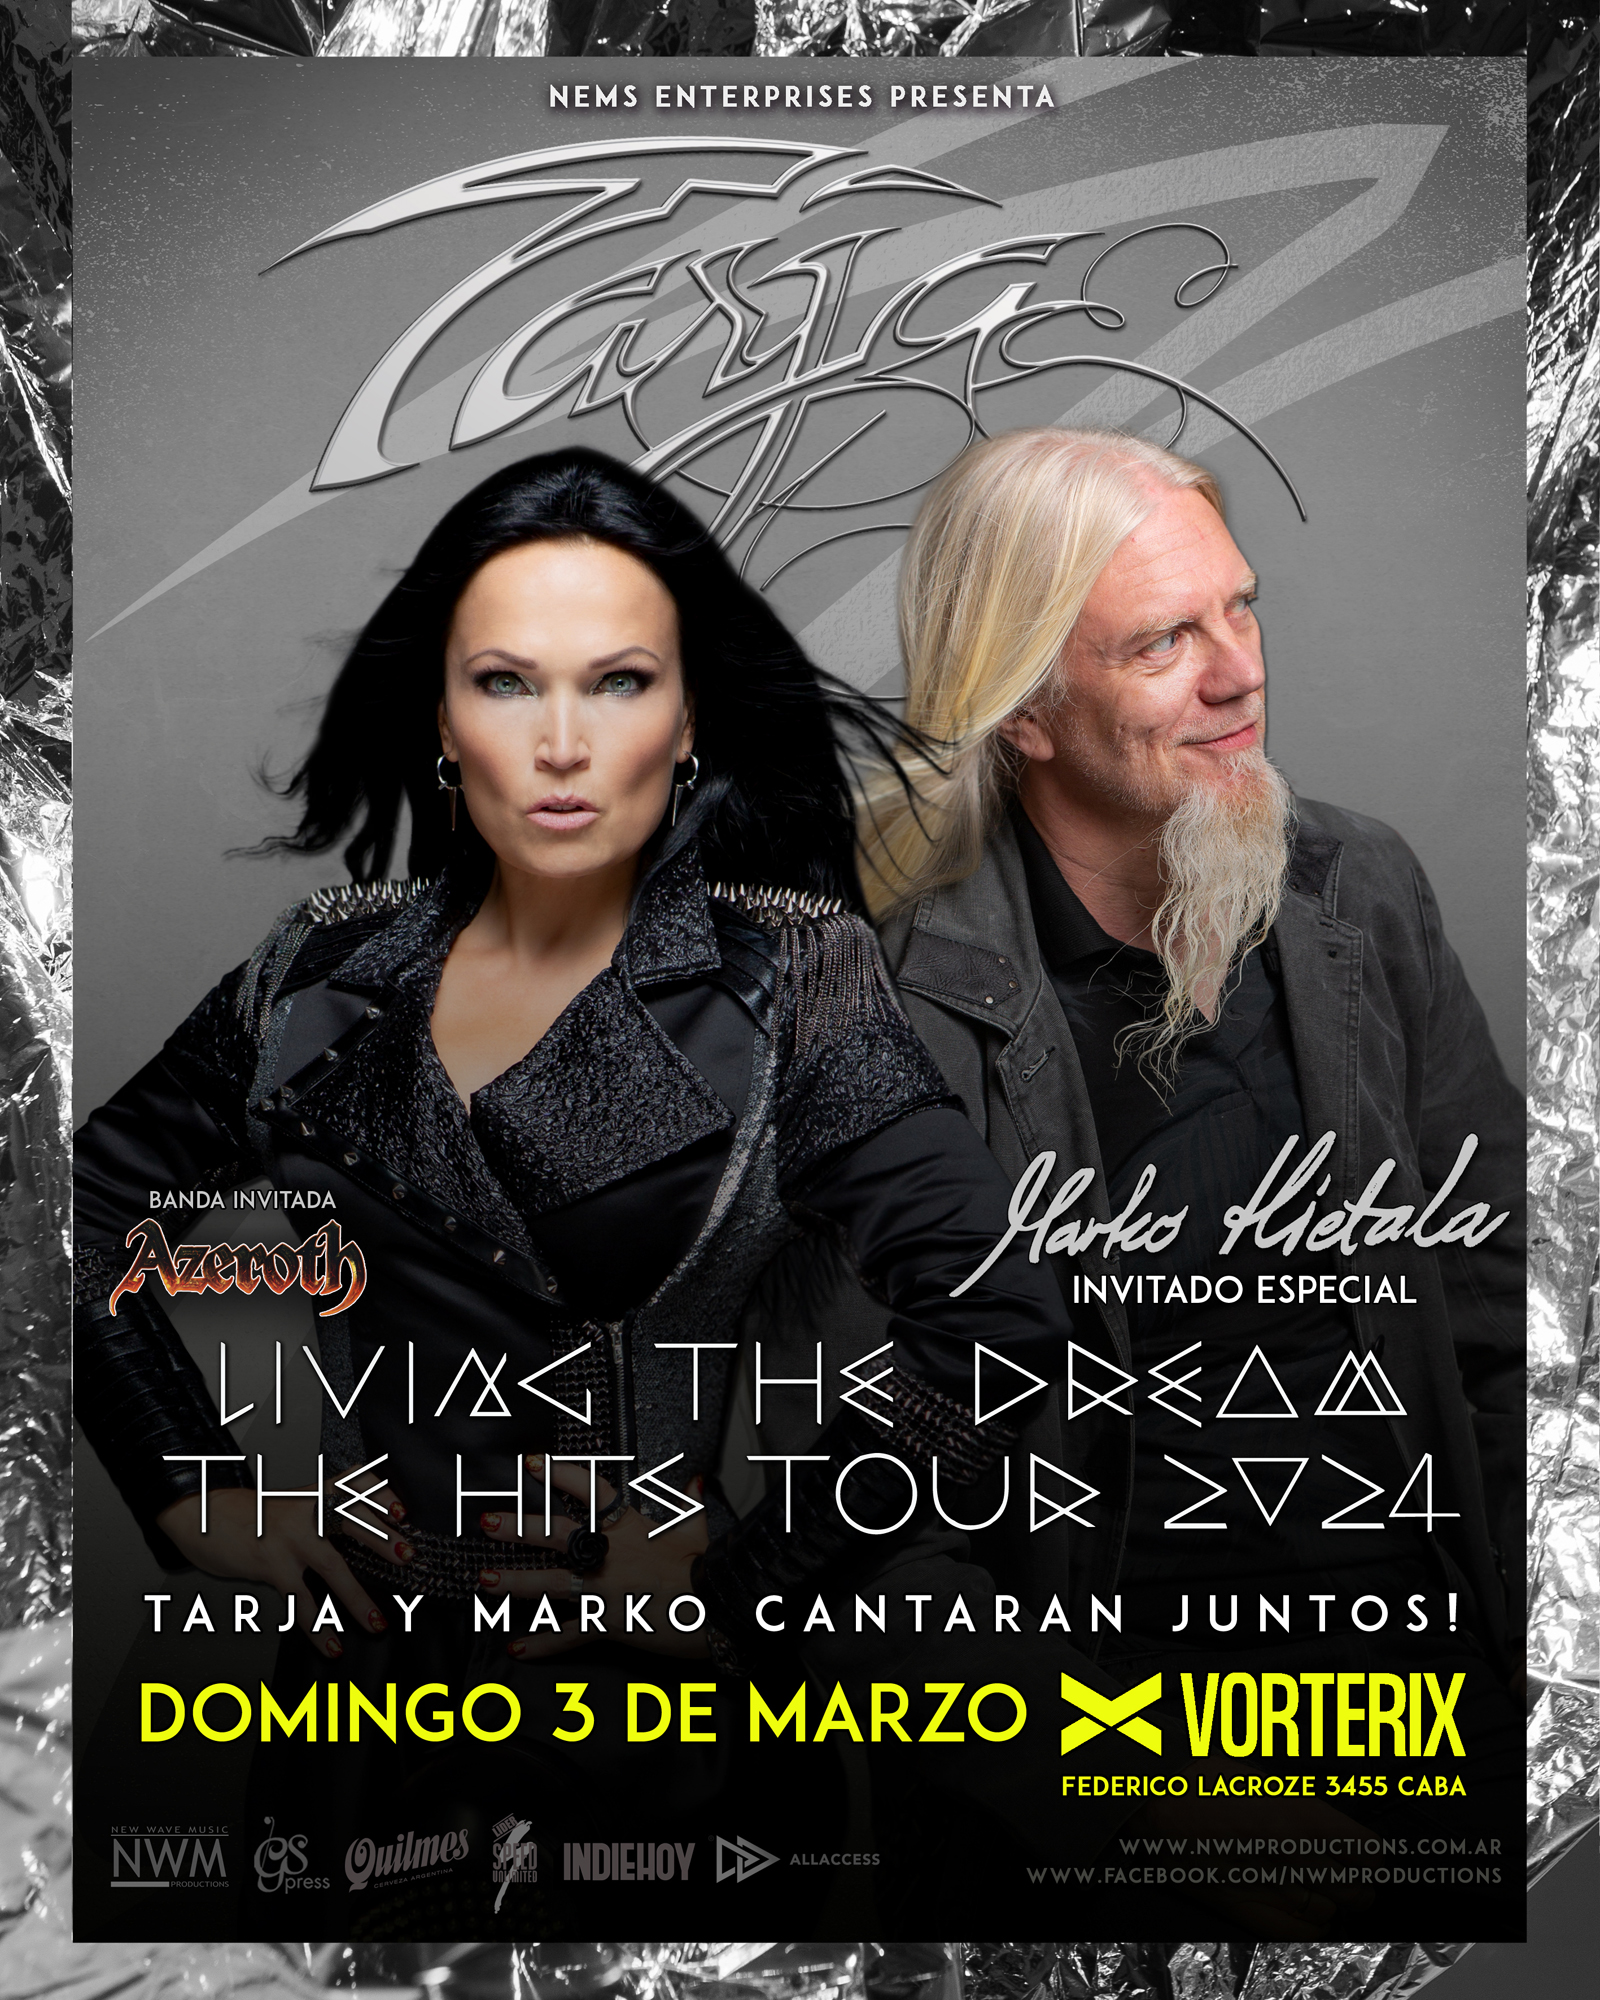 Tarja Turunen Living The Dream The Hits Tour 2024